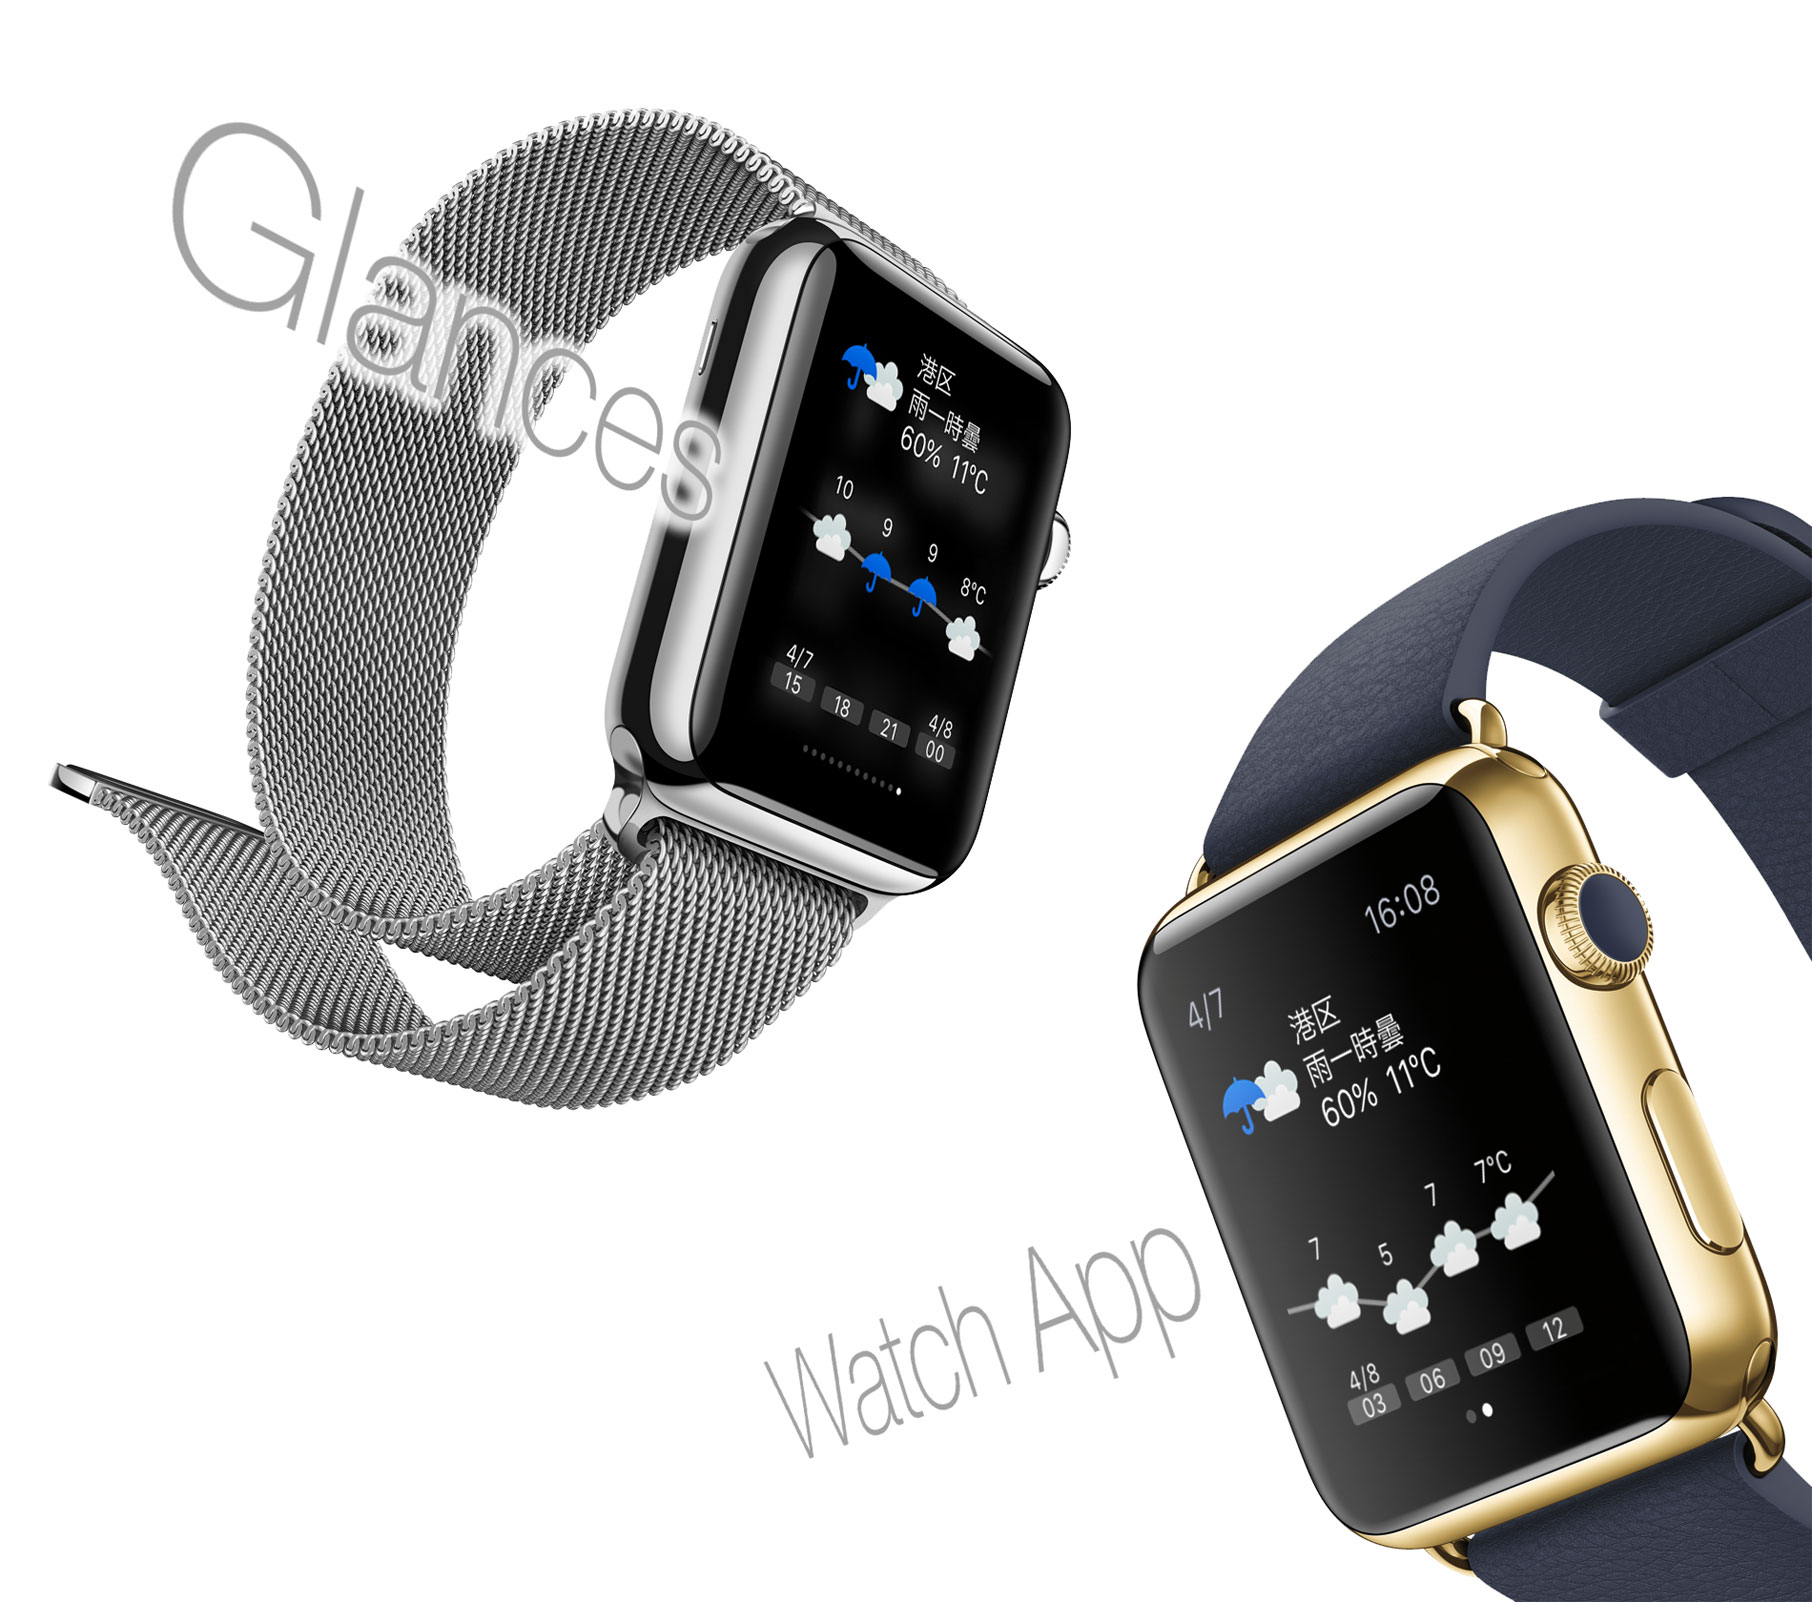 そら案内、Apple Watch対応版